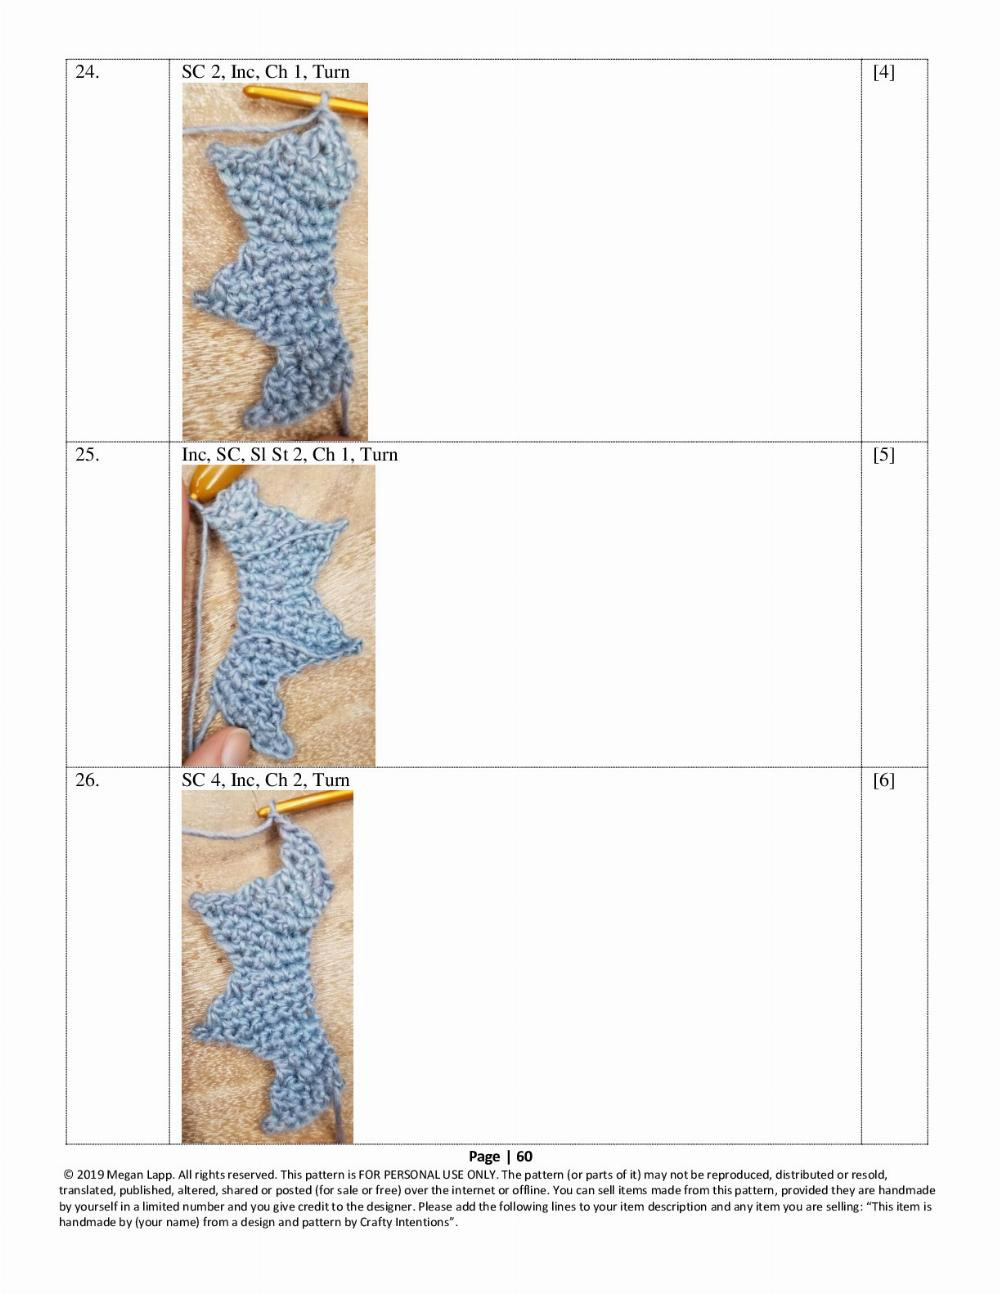 Seahorse crochet pattern